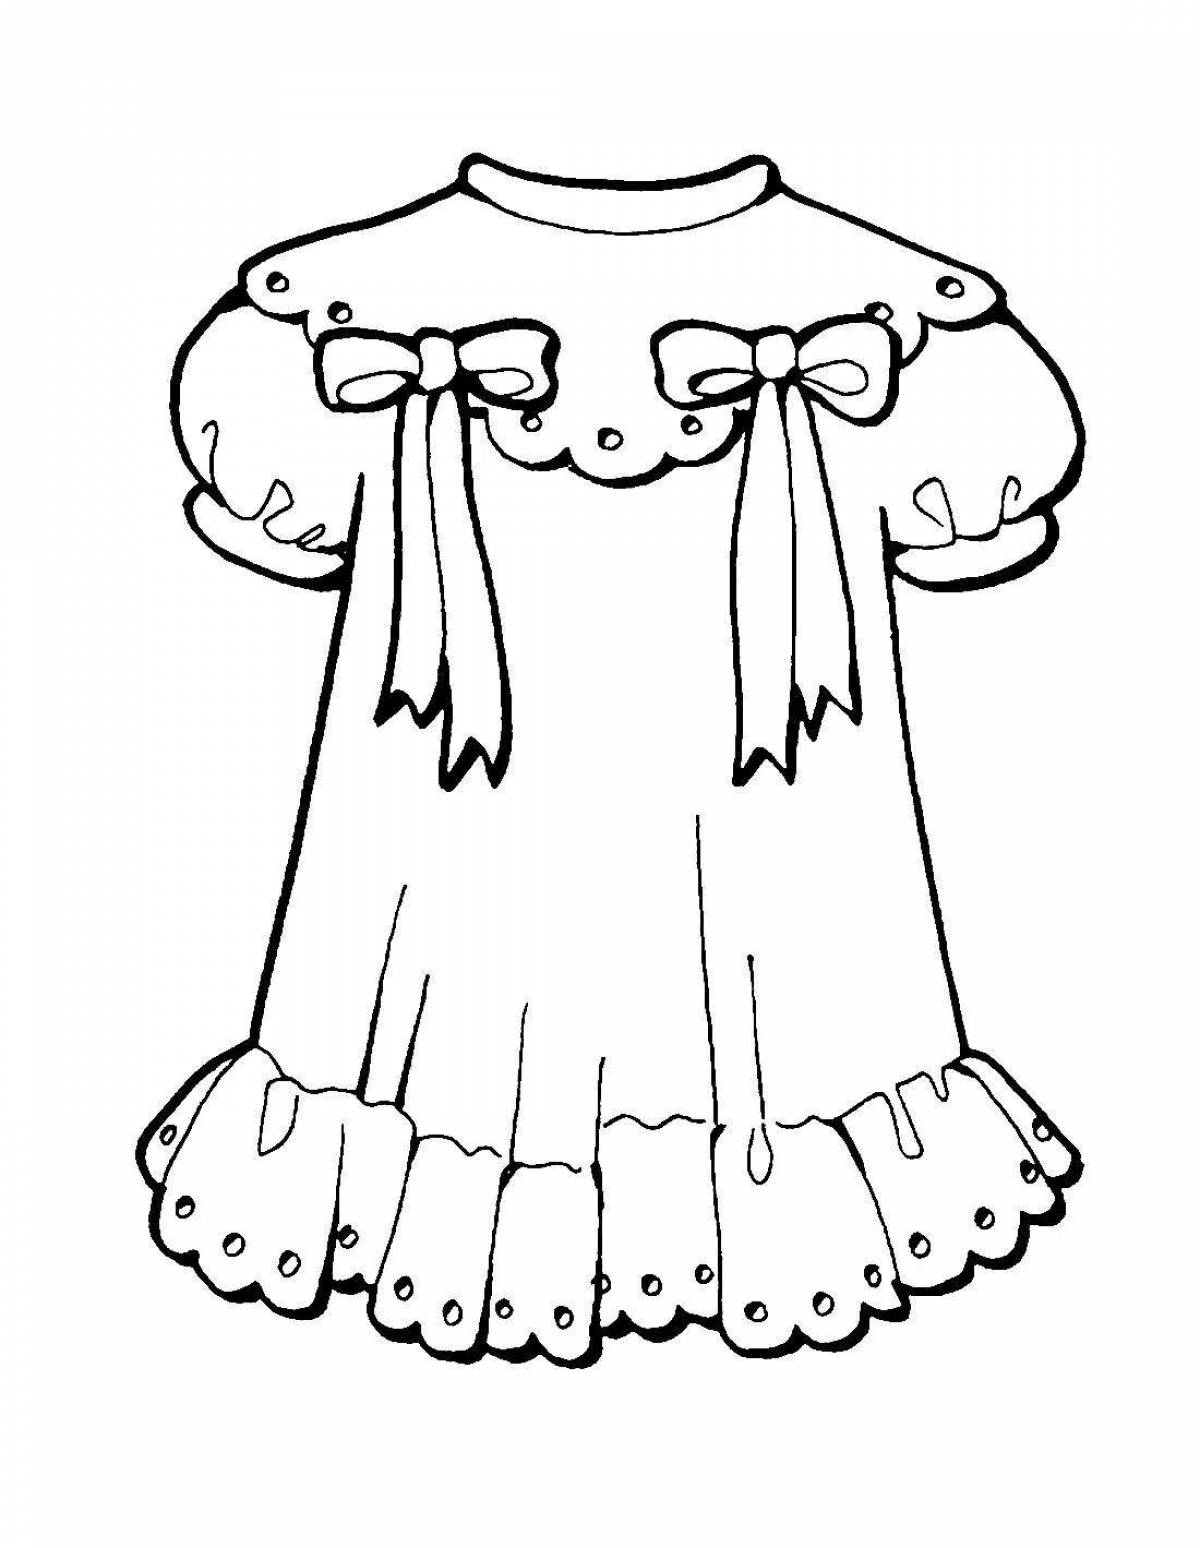 Раскраска сказочное кукольное платье для детей 4-5 лет